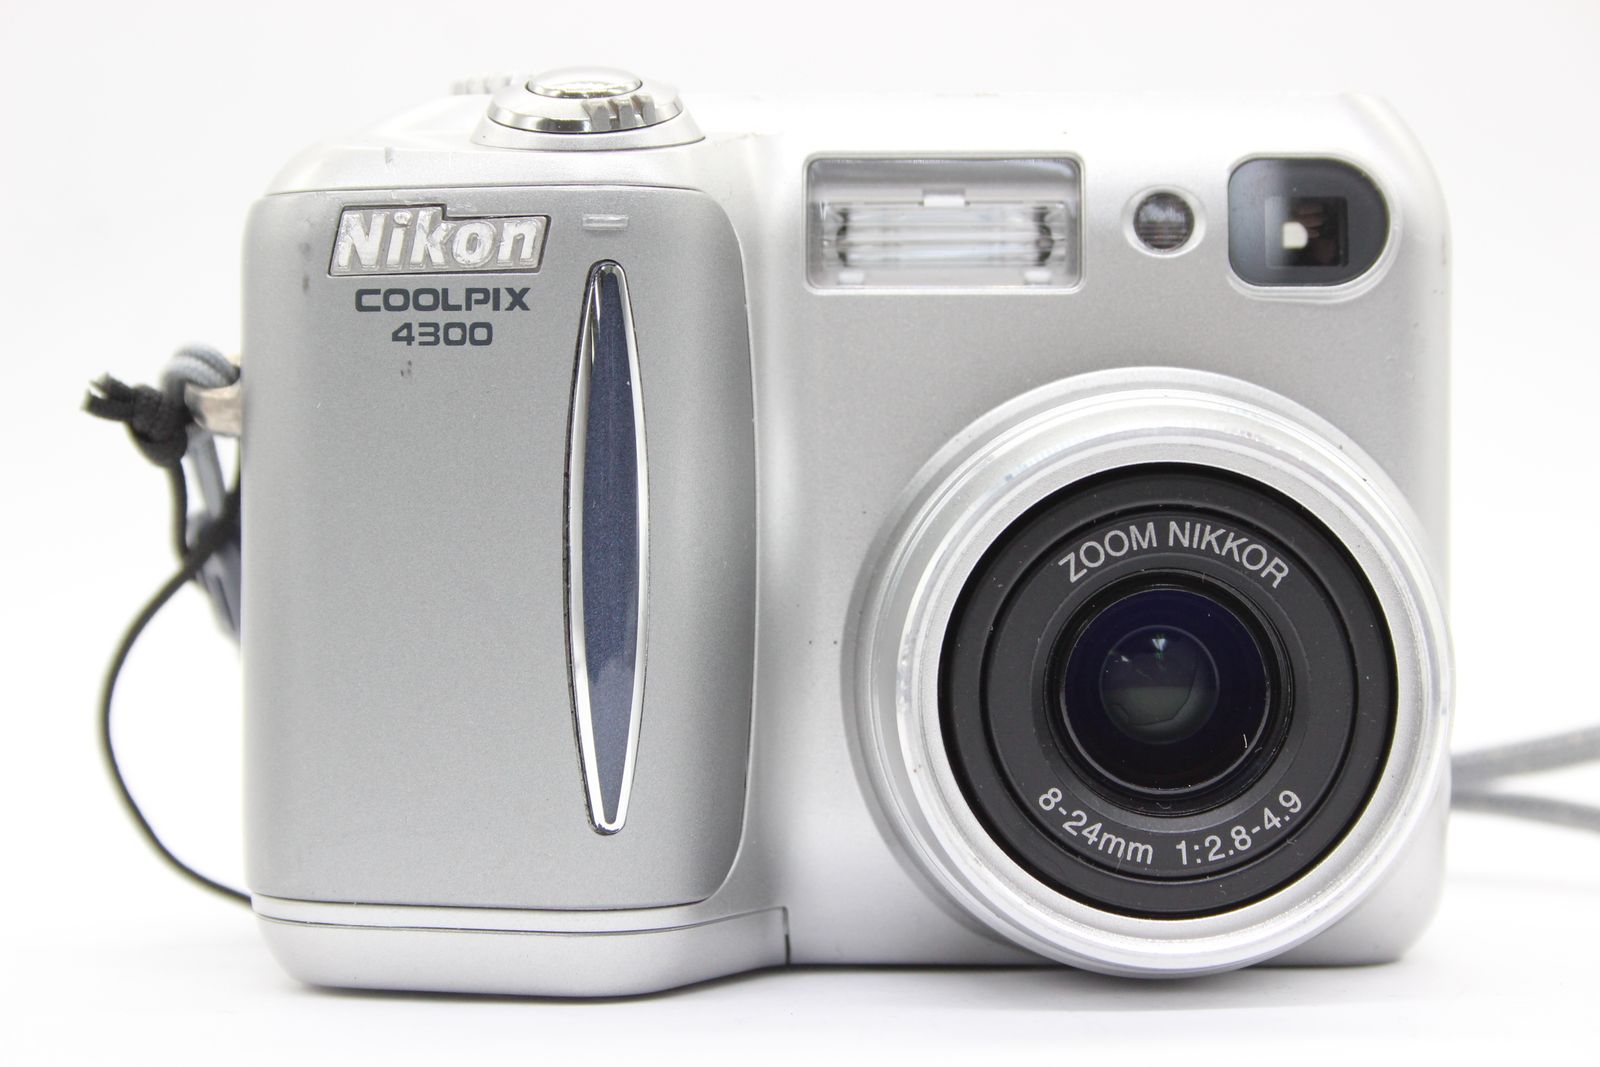 【返品保証】 ニコン Nikon Coolpix E4300 バッテリー付き コンパクトデジタルカメラ s5791